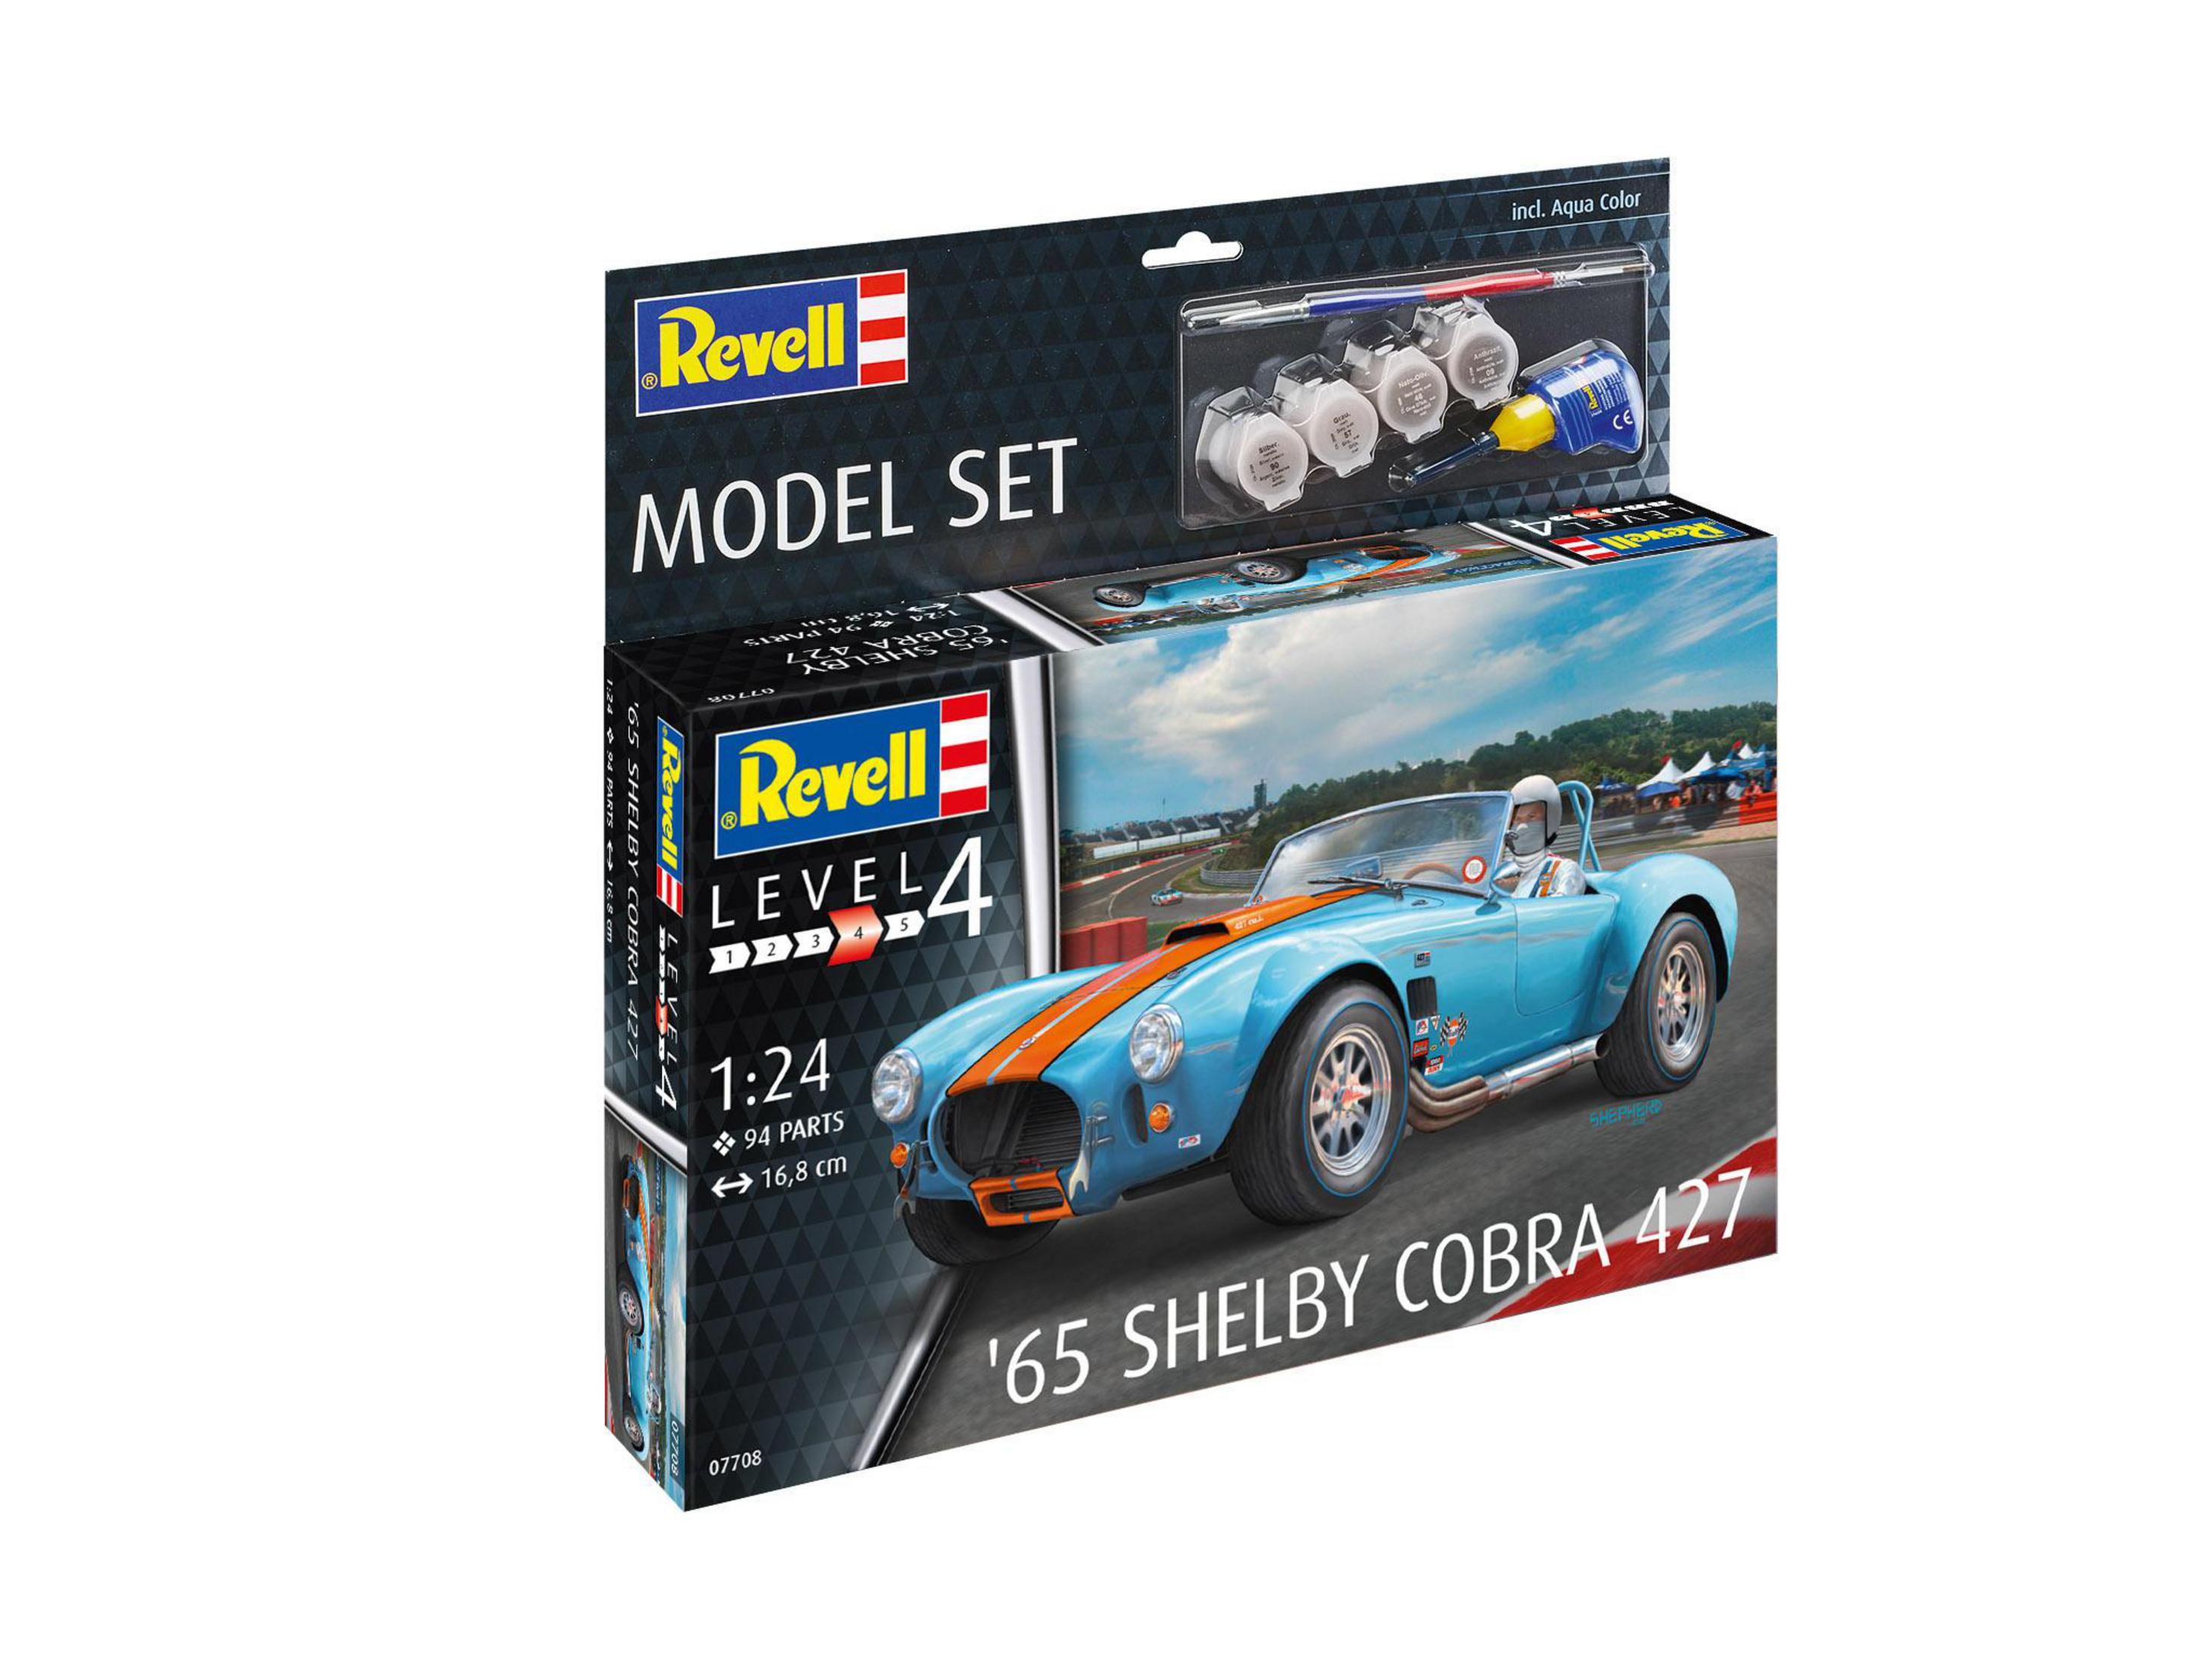 REVELL Modellbausatz, SHELBY Blau/Rot SET 65 MODEL 427 67708 COBRA